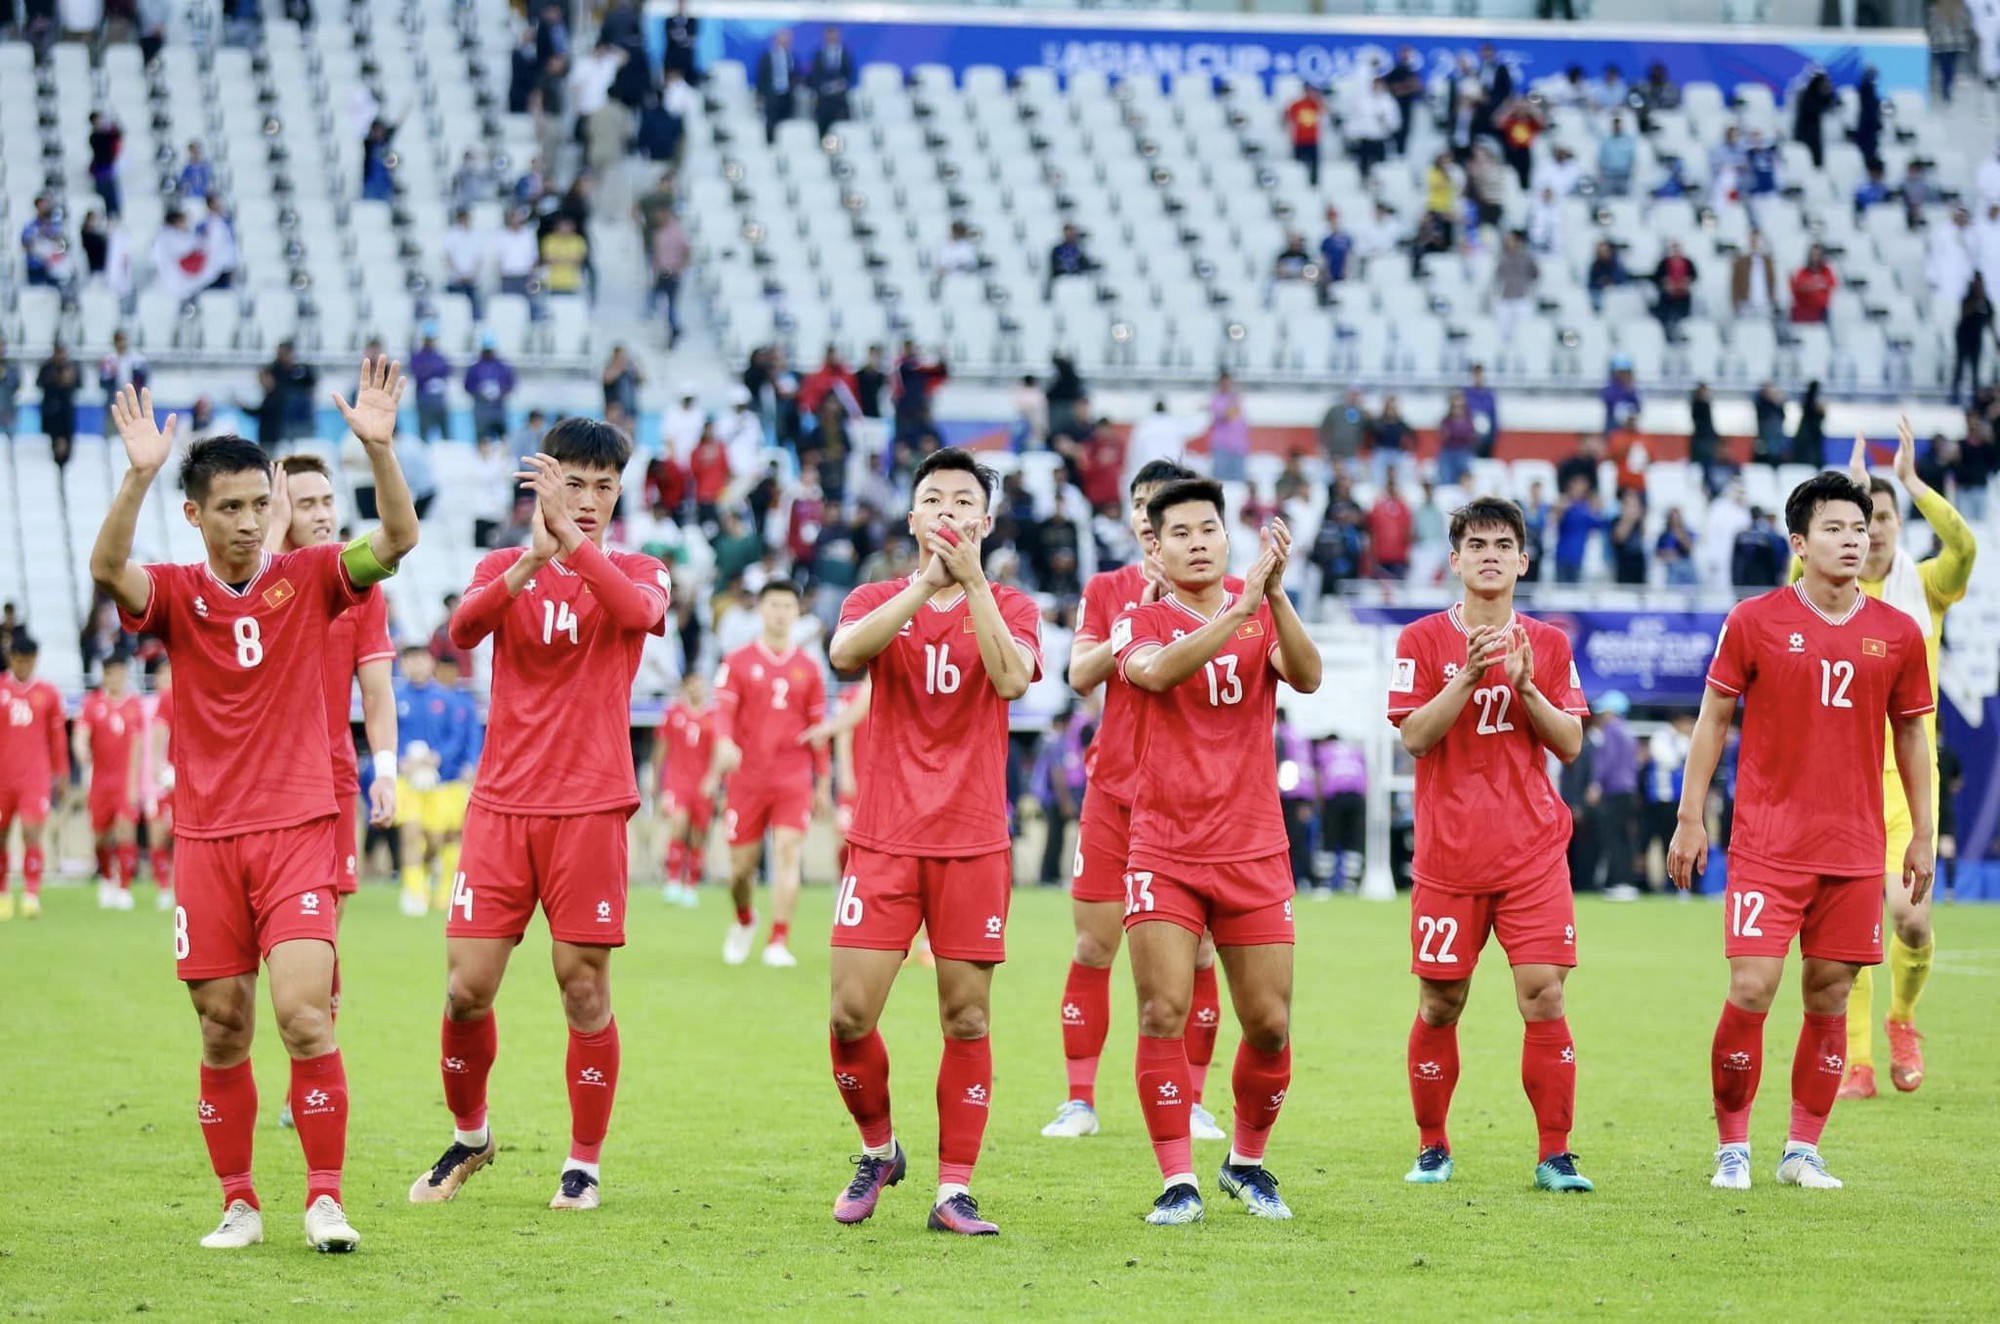 Thấy gì từ trận đội tuyển Việt Nam thua Nhật Bản: Vượt bão hoài nghi, ươm mầm hy vọng - Ảnh 5.